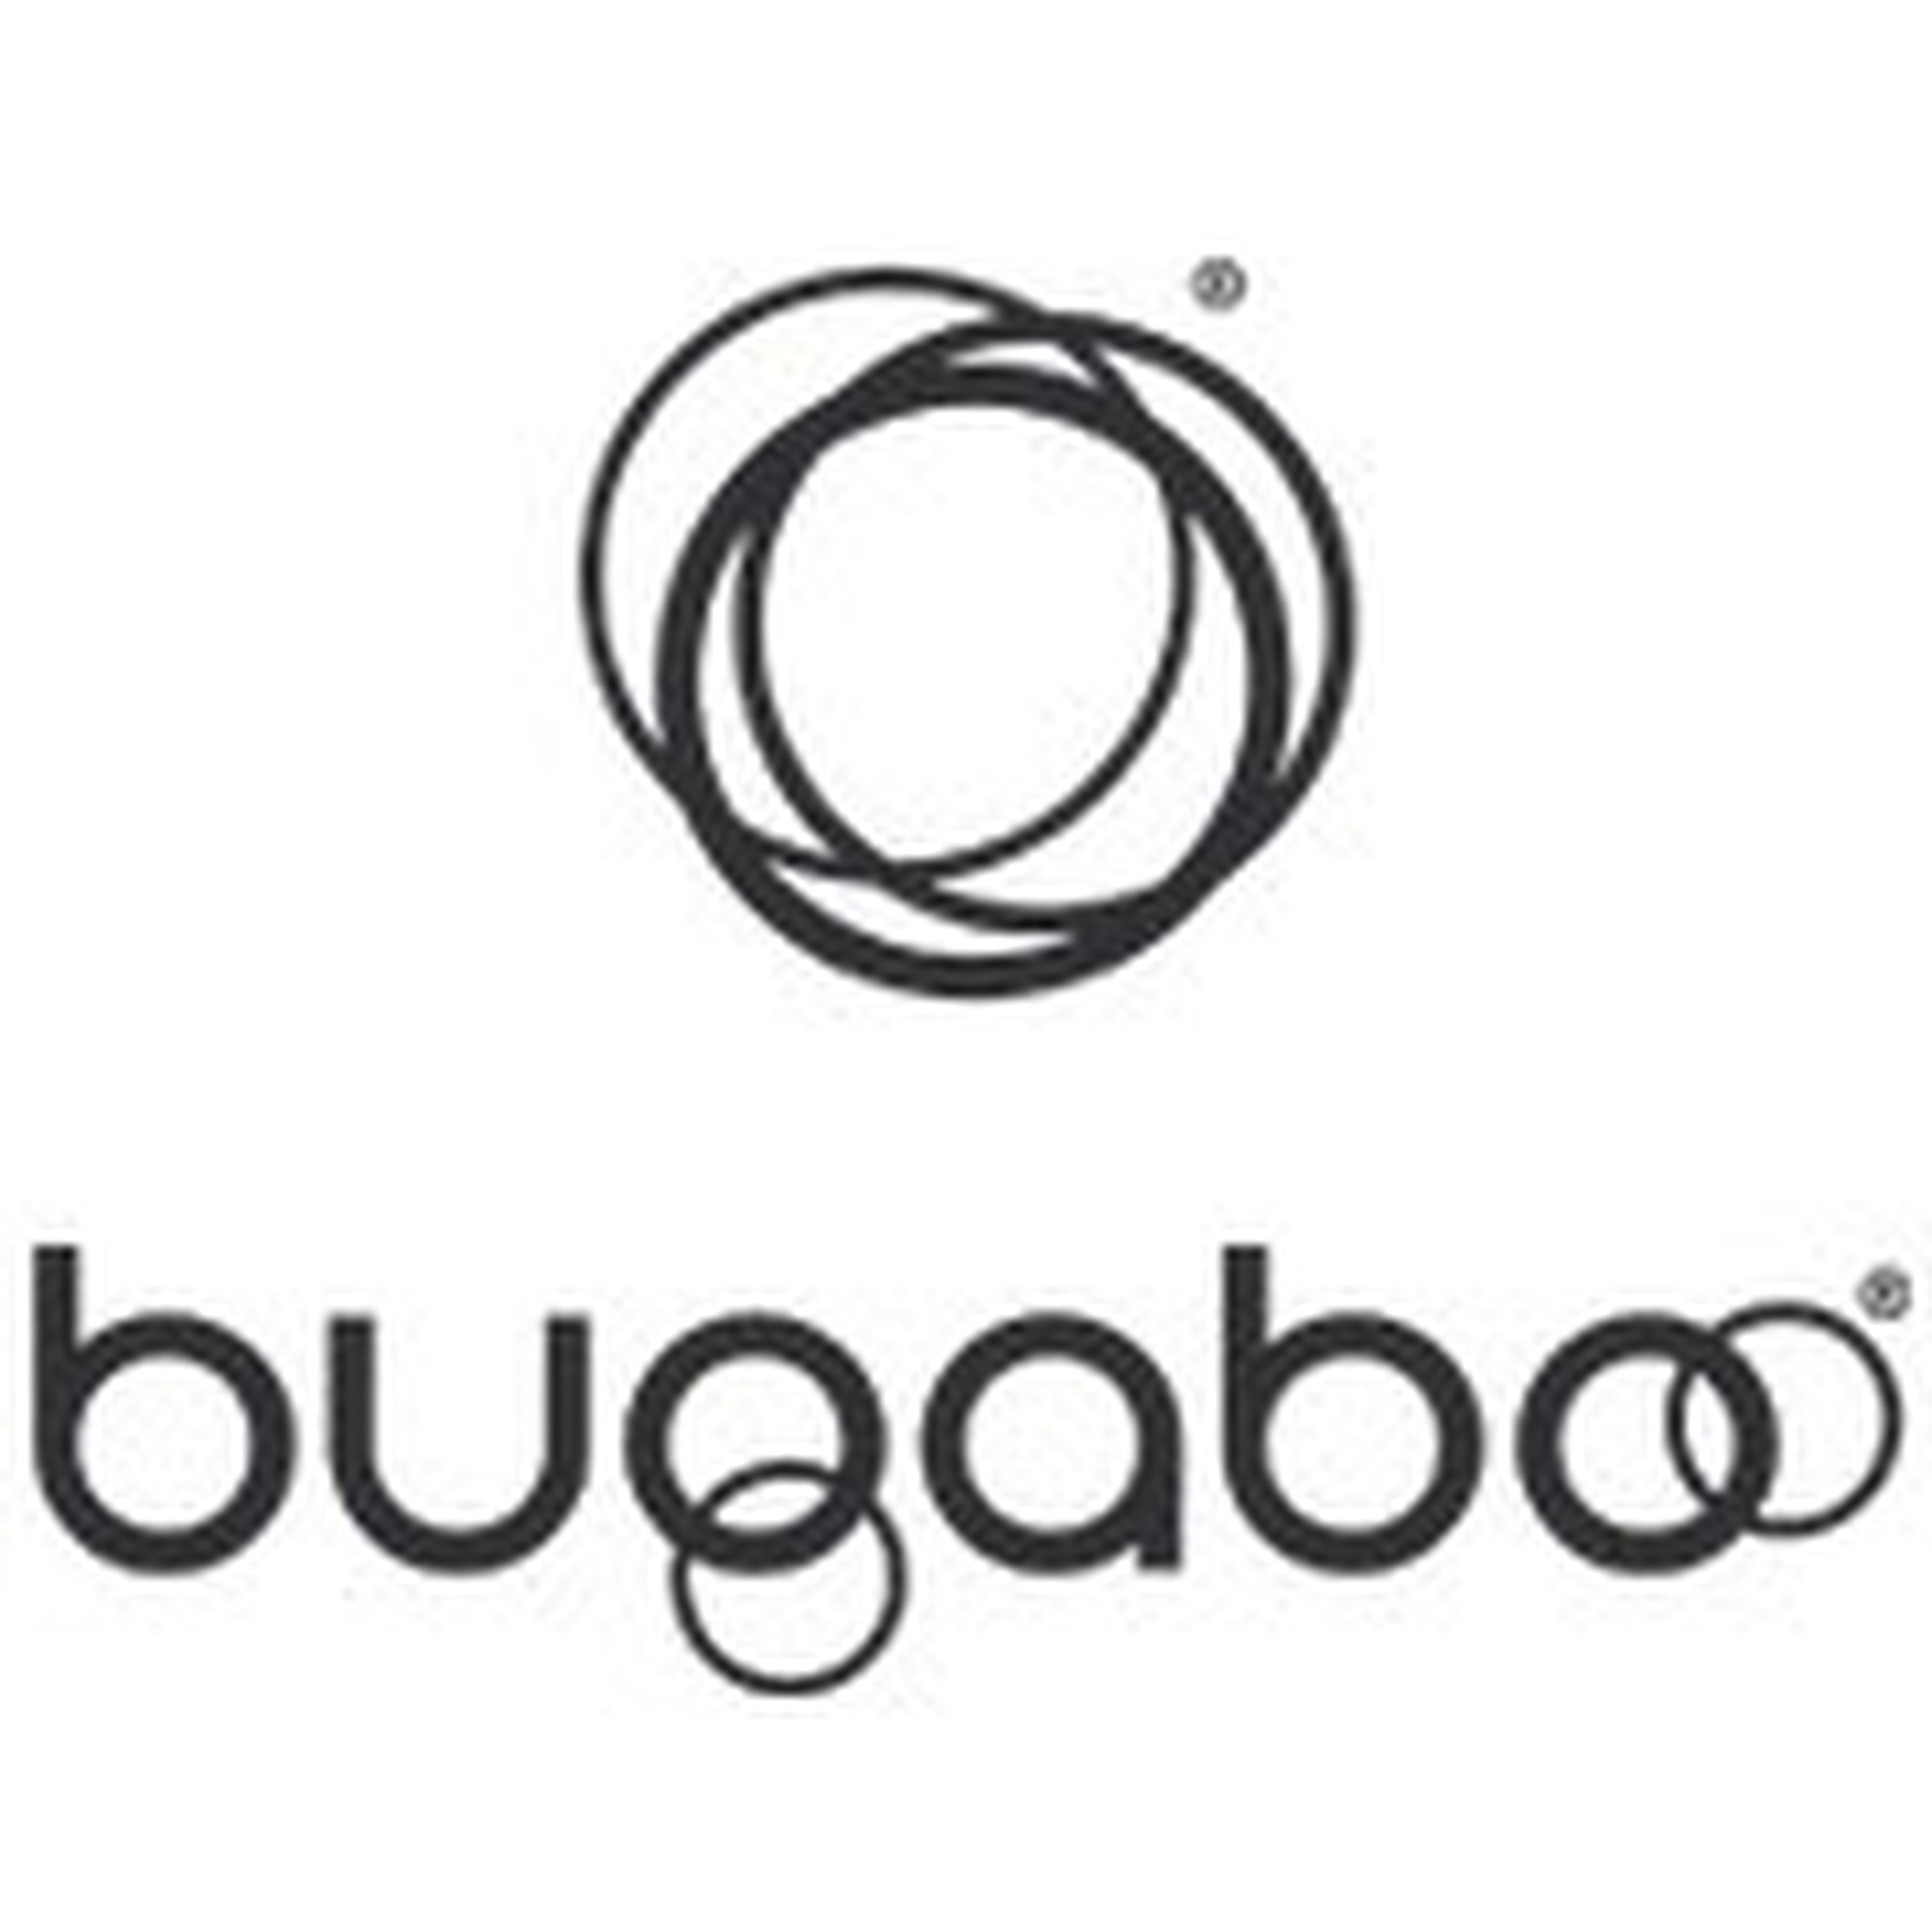 Comprar online carritos Bugaboo, ofertas y promociones Bugaboo Fox², Bee6, Donkey³